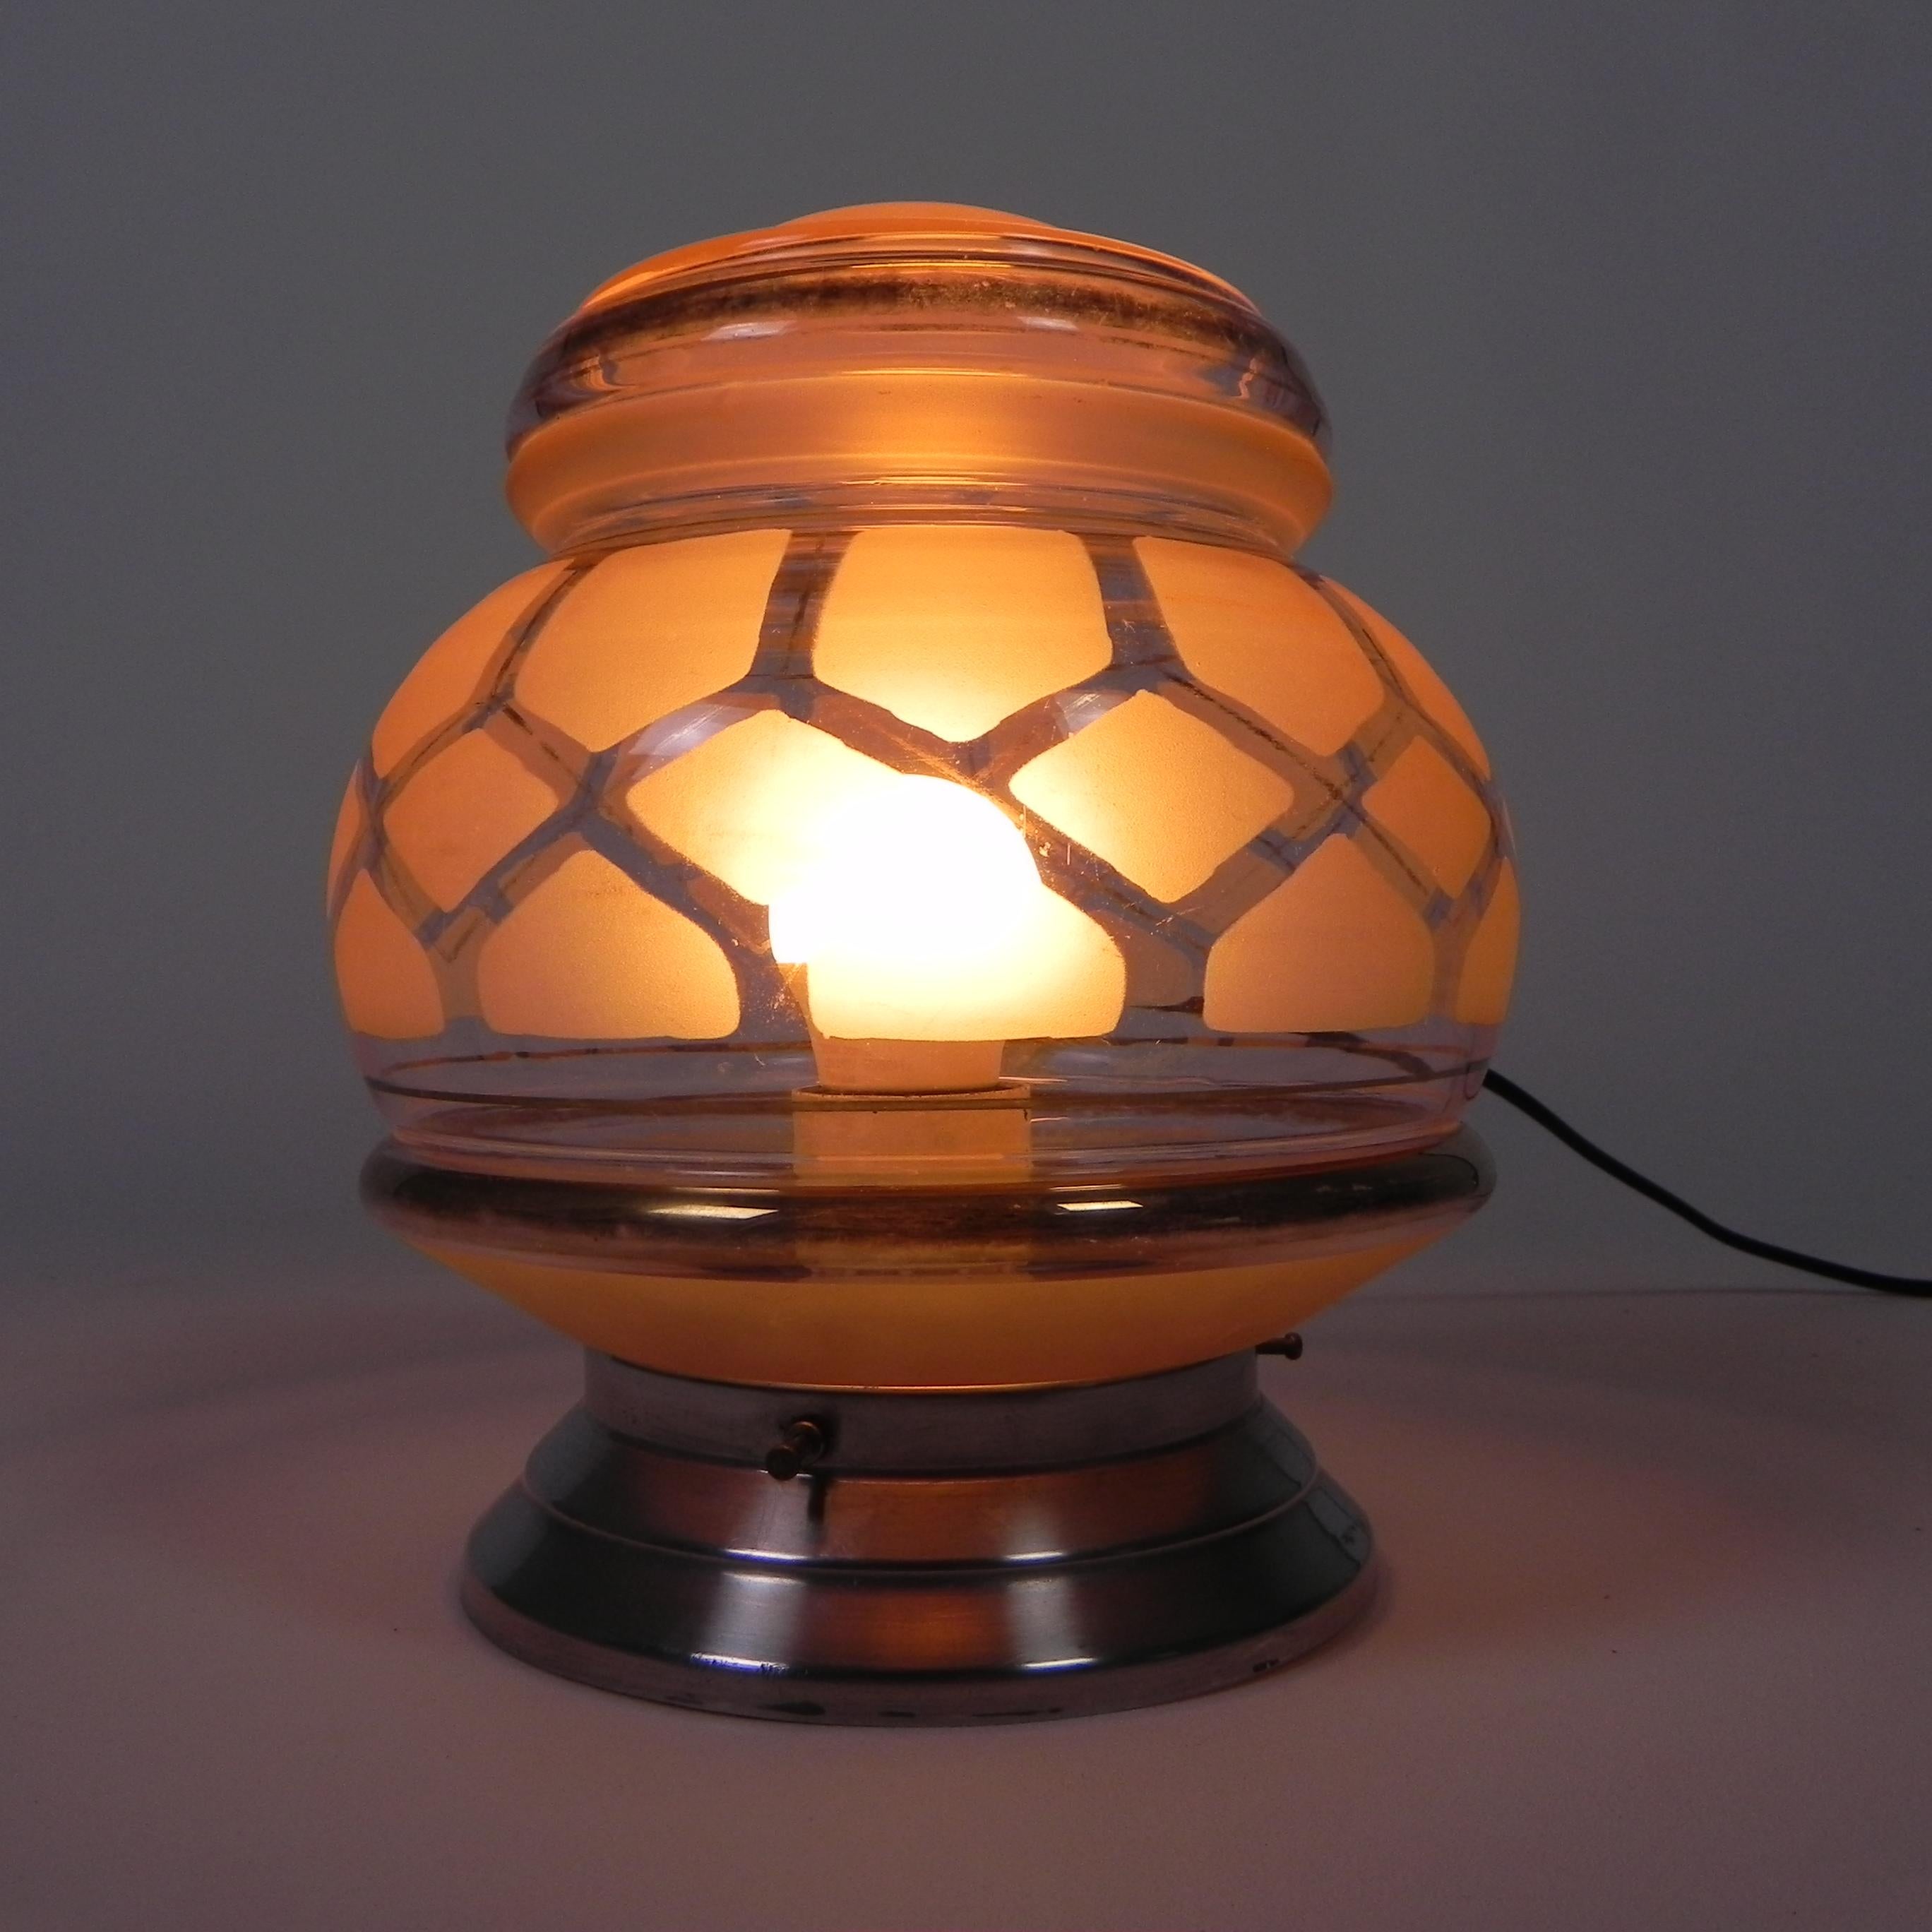 Gesamthöhe: 22 cm.
Ø Glasschirm: 18 cm.
Die Lampe hat eine große Glühbirnenfassung (E27).
Herkunft: Frankreich, 1930er Jahre.
MATERIAL: Aluminium / Glas.
Alle unsere Lampen sind für LED-Lampen geeignet.